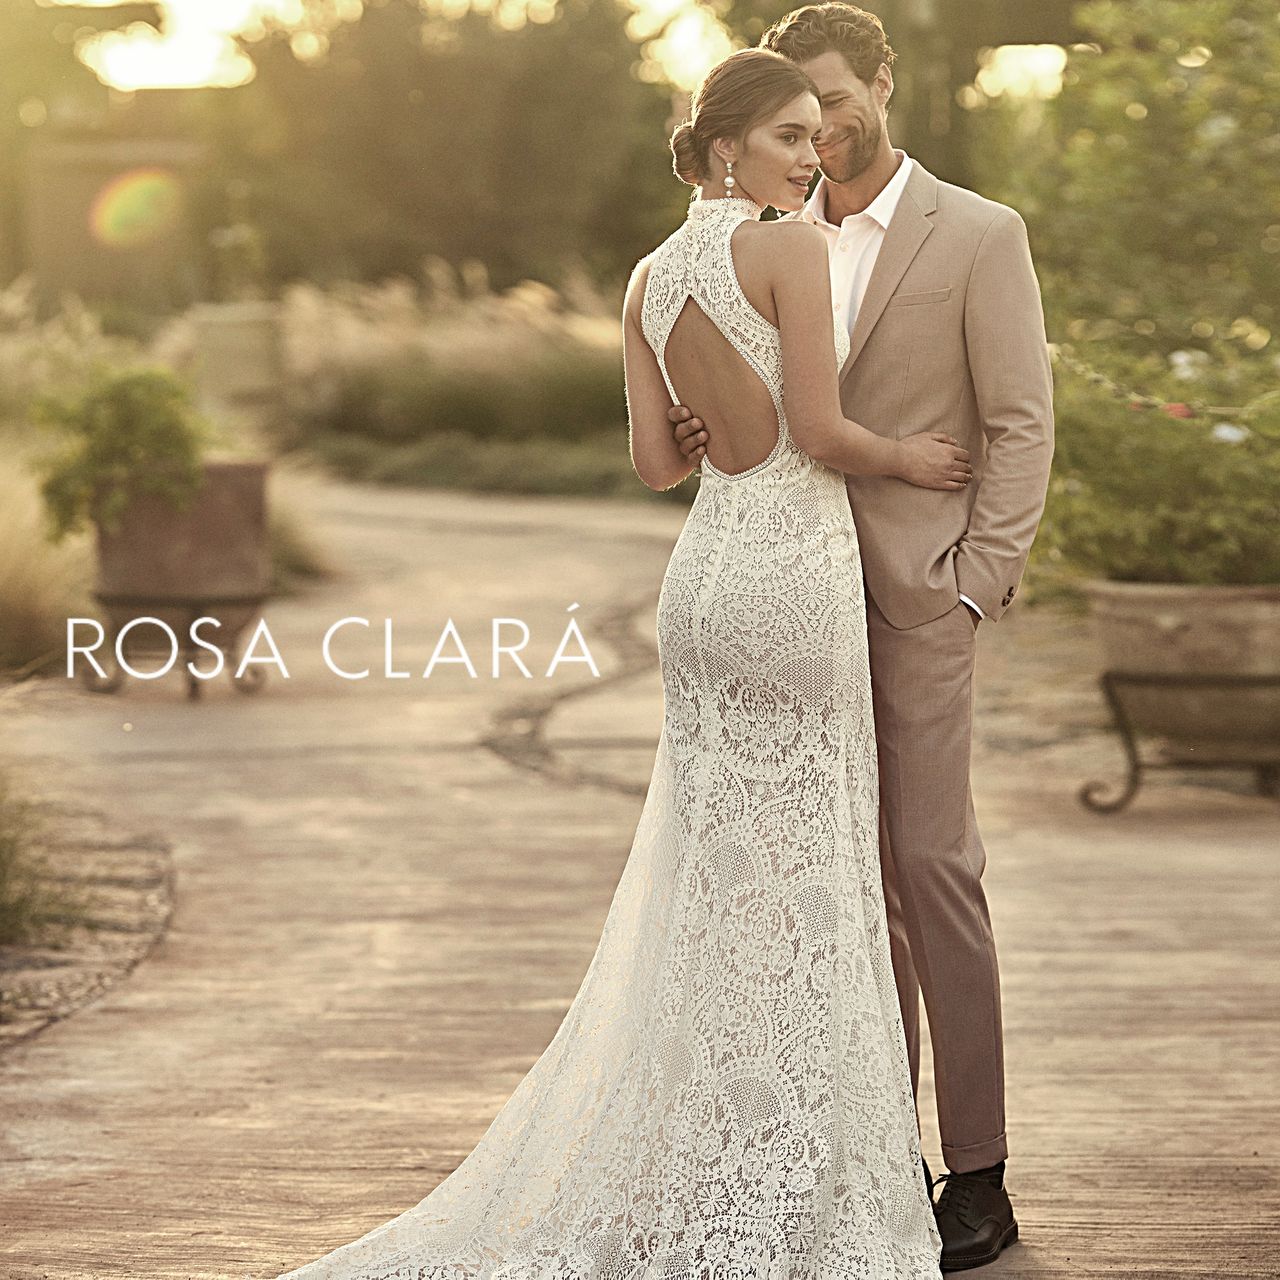 Rosa Clará esküvői ruha kollekció